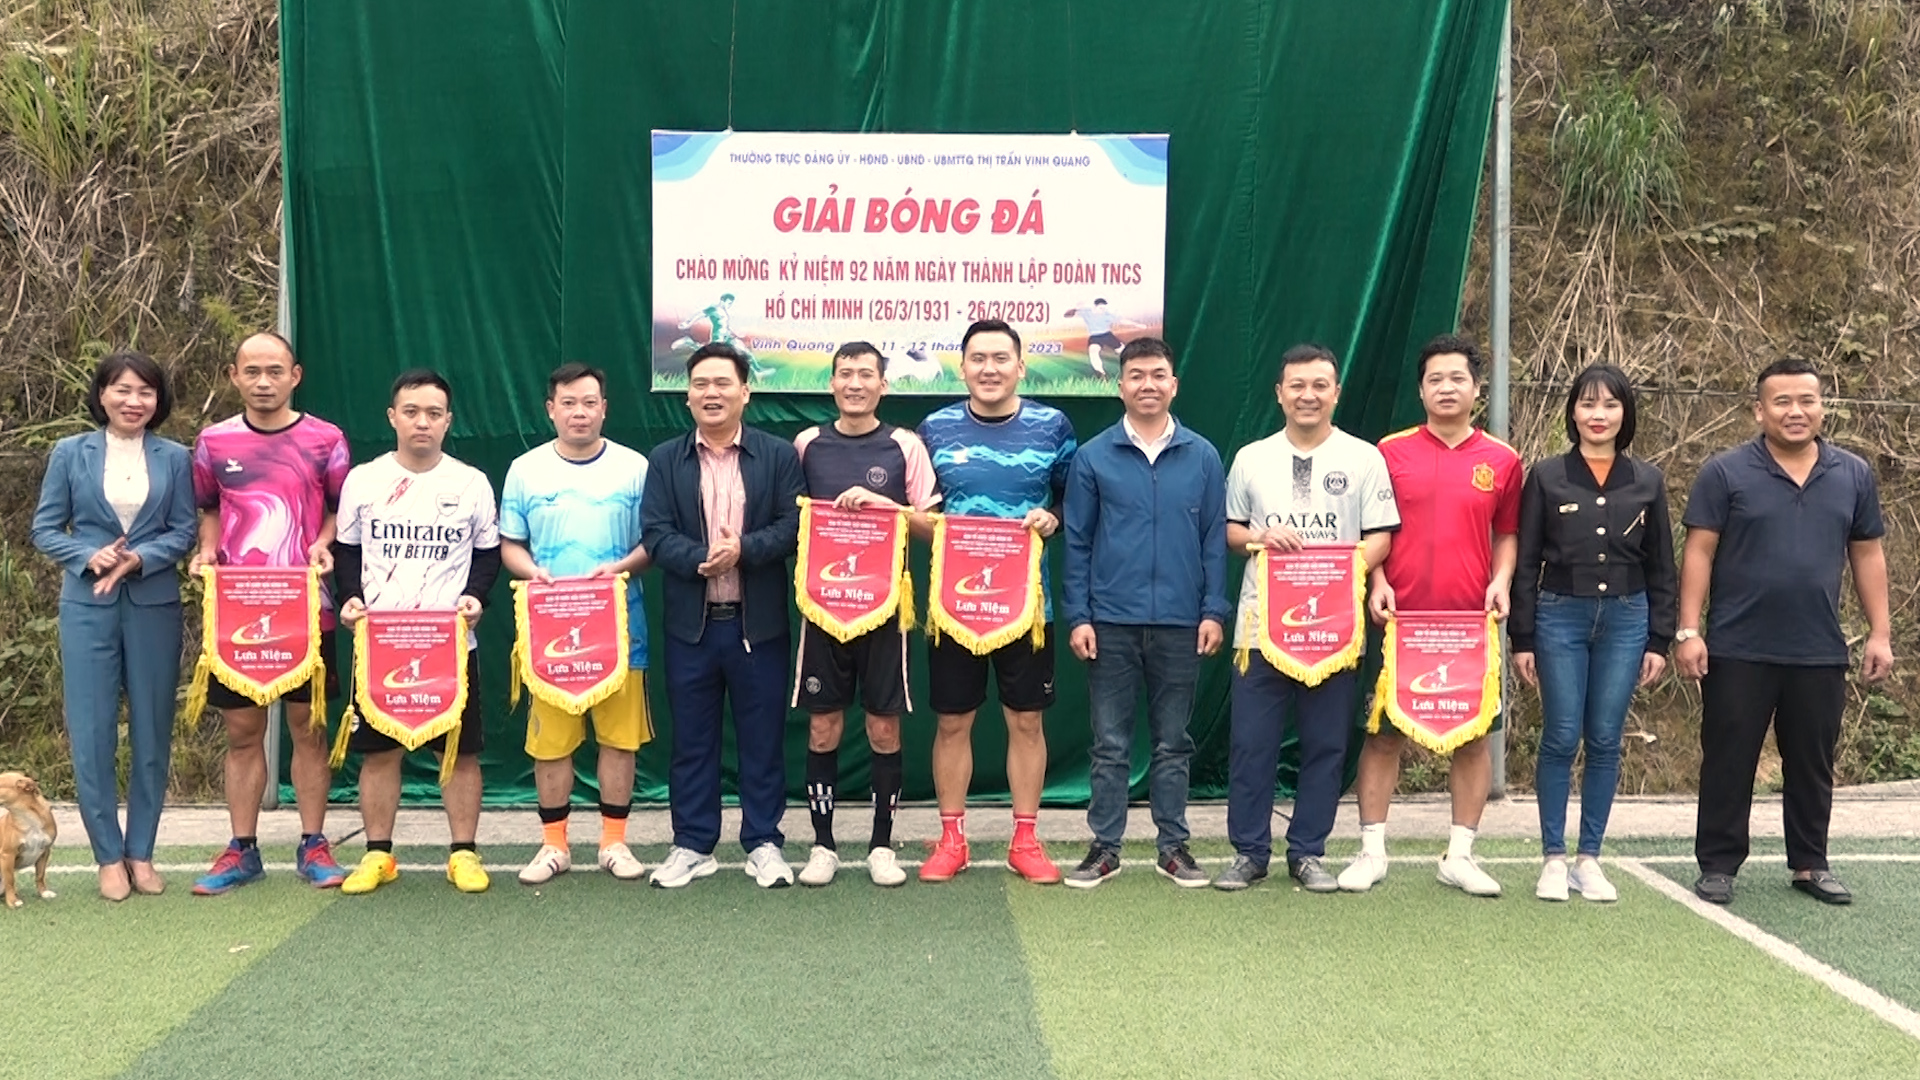 Khai mạc giải bóng đá thị trấn Vinh Quang chào mừng thành lập đoàn 26/3.